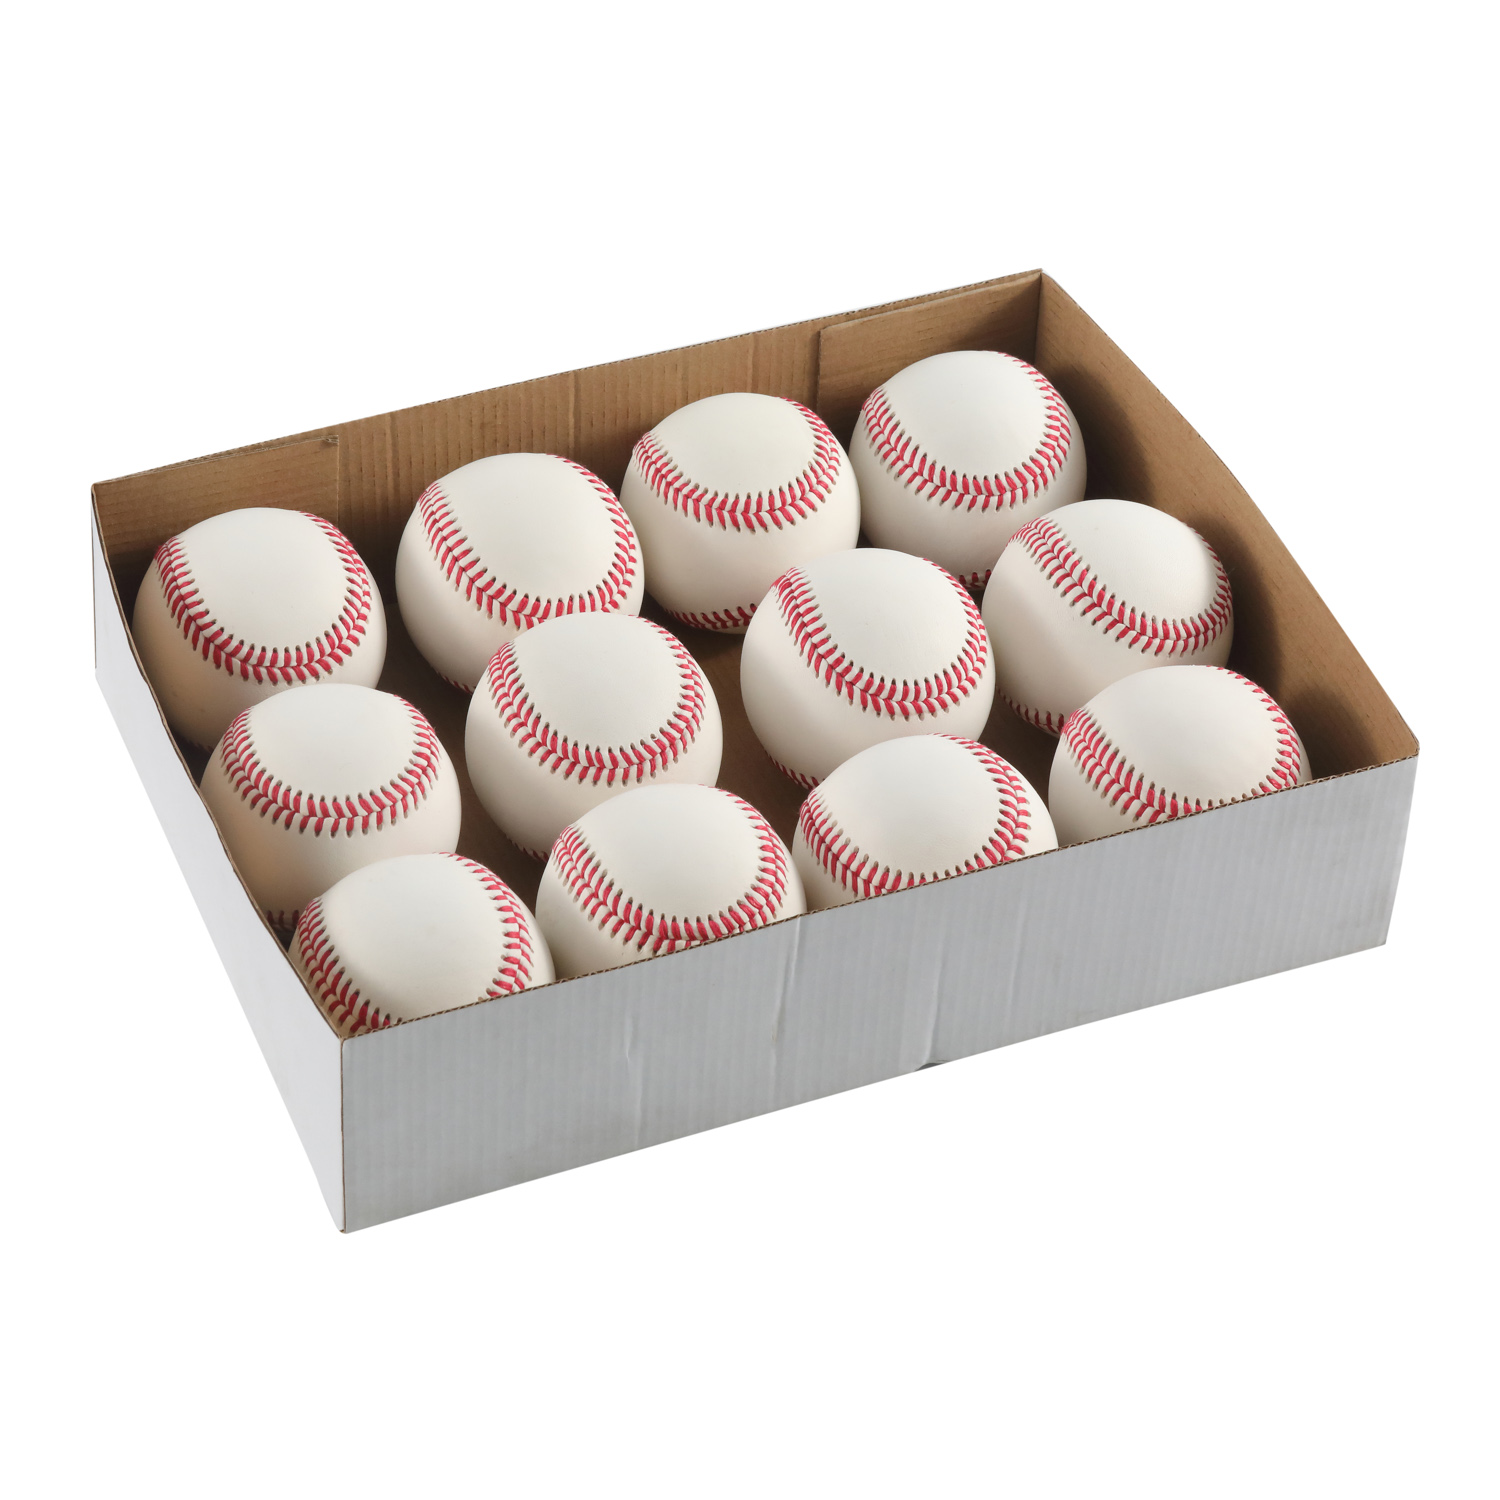 9 "cubierta de cuero de grano completo de cuero de vaca Major Little League College oficial juego profesional pelota de béisbol de cuero